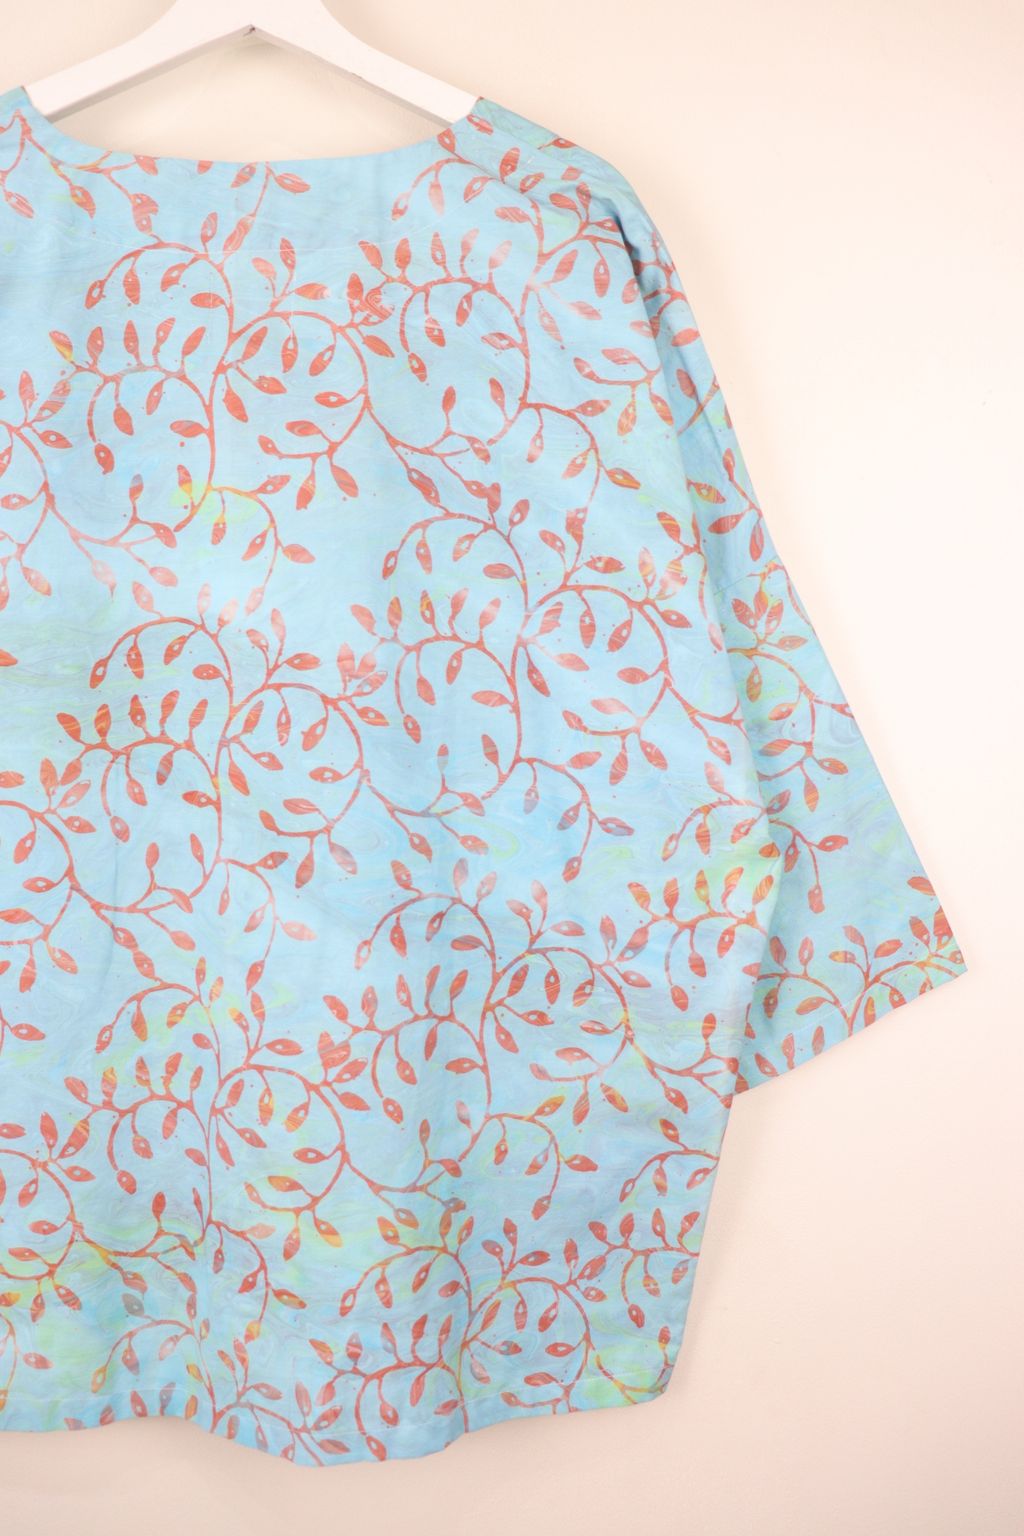 batik-kimono-handmade-270.JPG